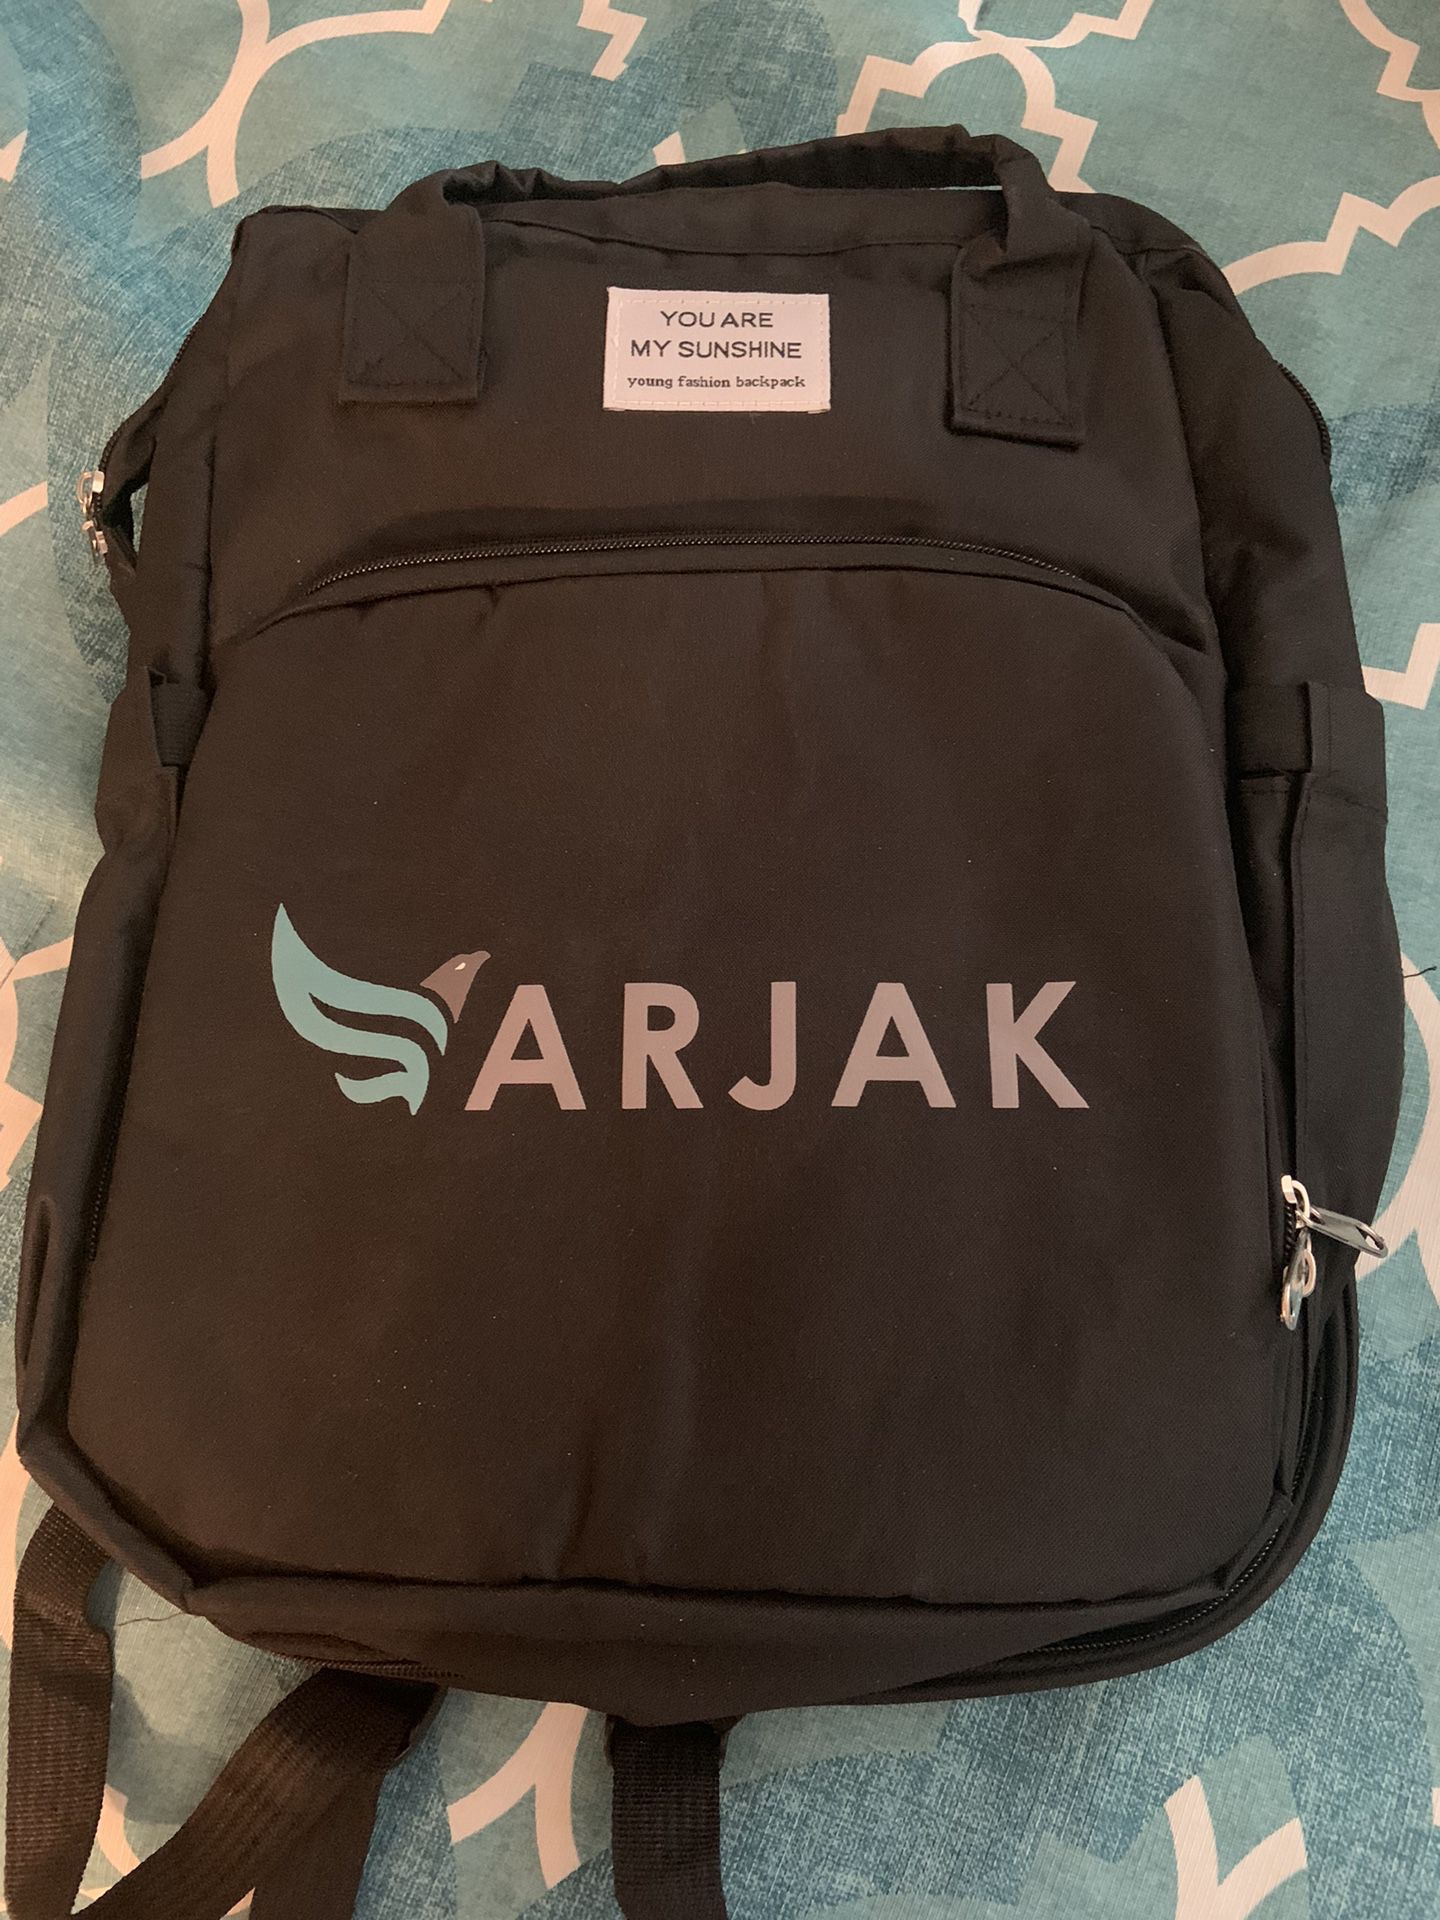 Arjak Backpack 